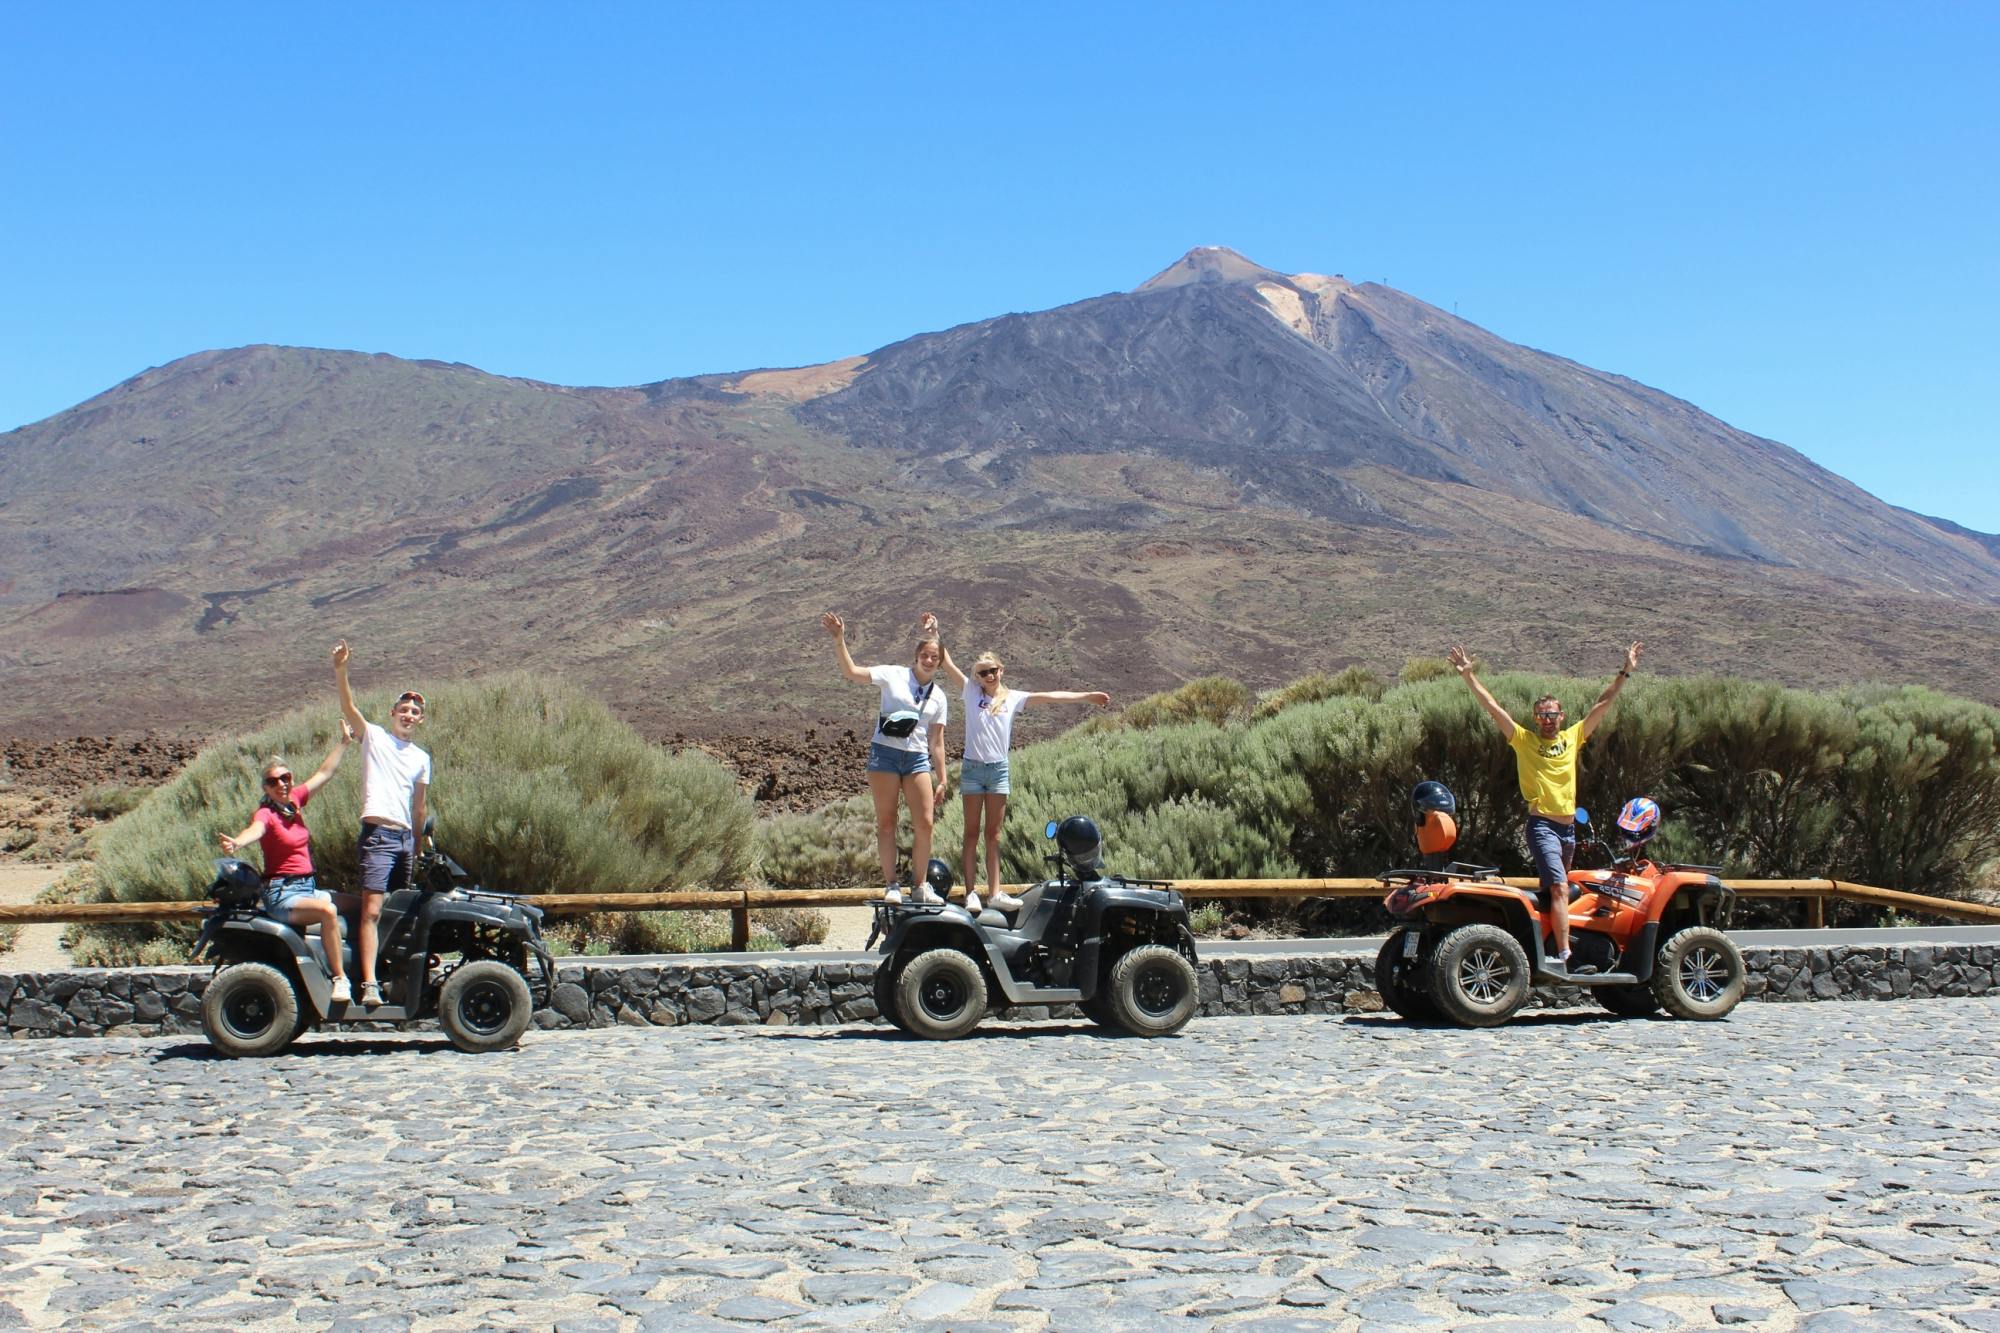 Visita guiada en quad al parque nacional del Teide desde la zona A